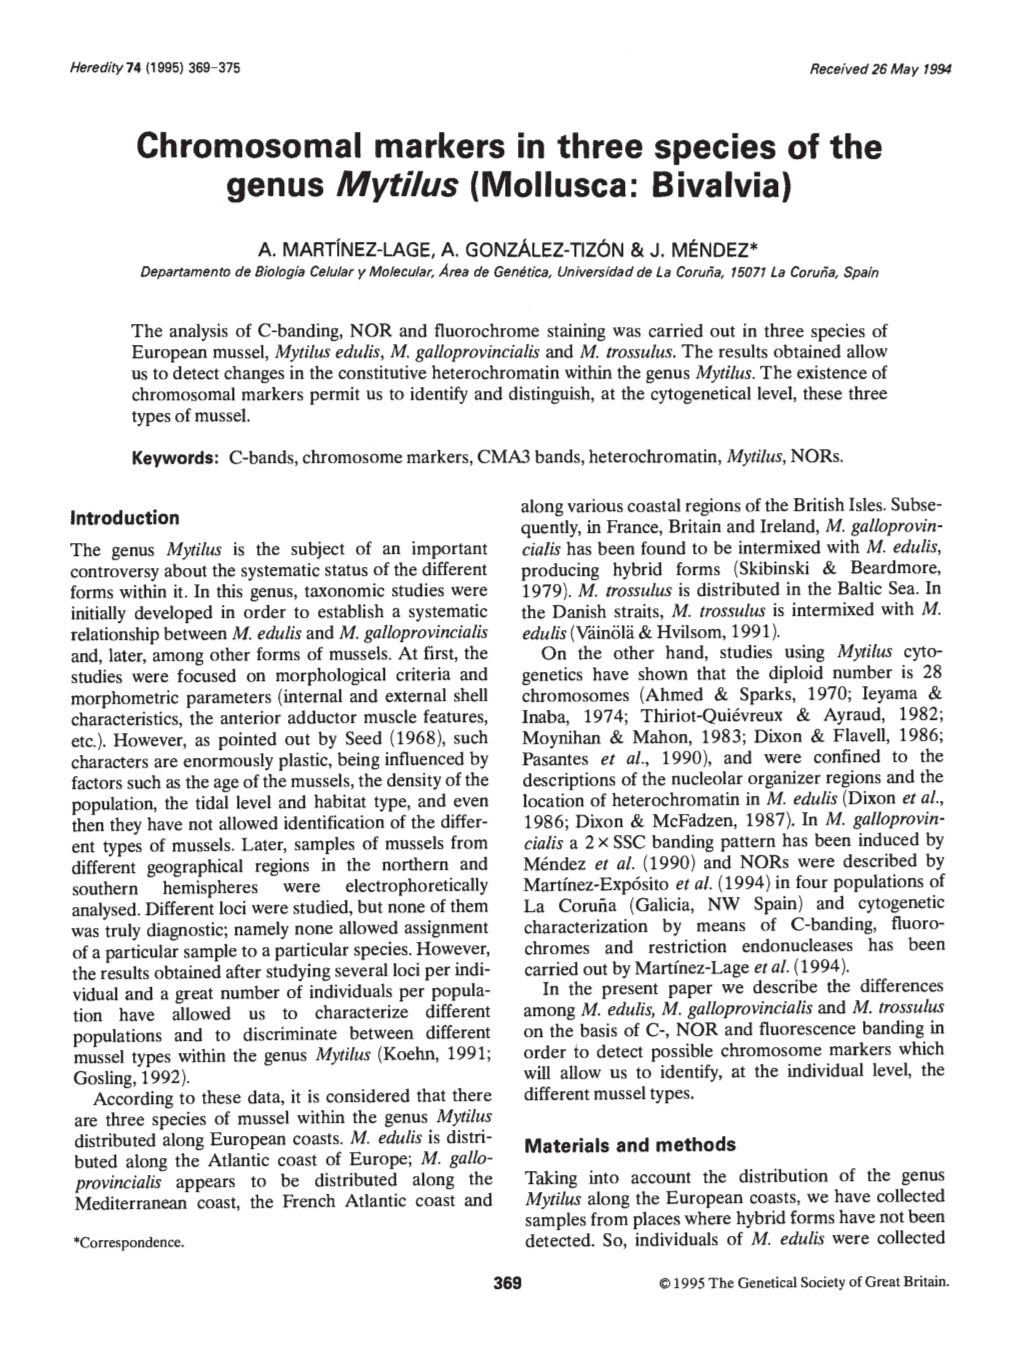 Genus Mytilus (Moflusca: Bivalvia)